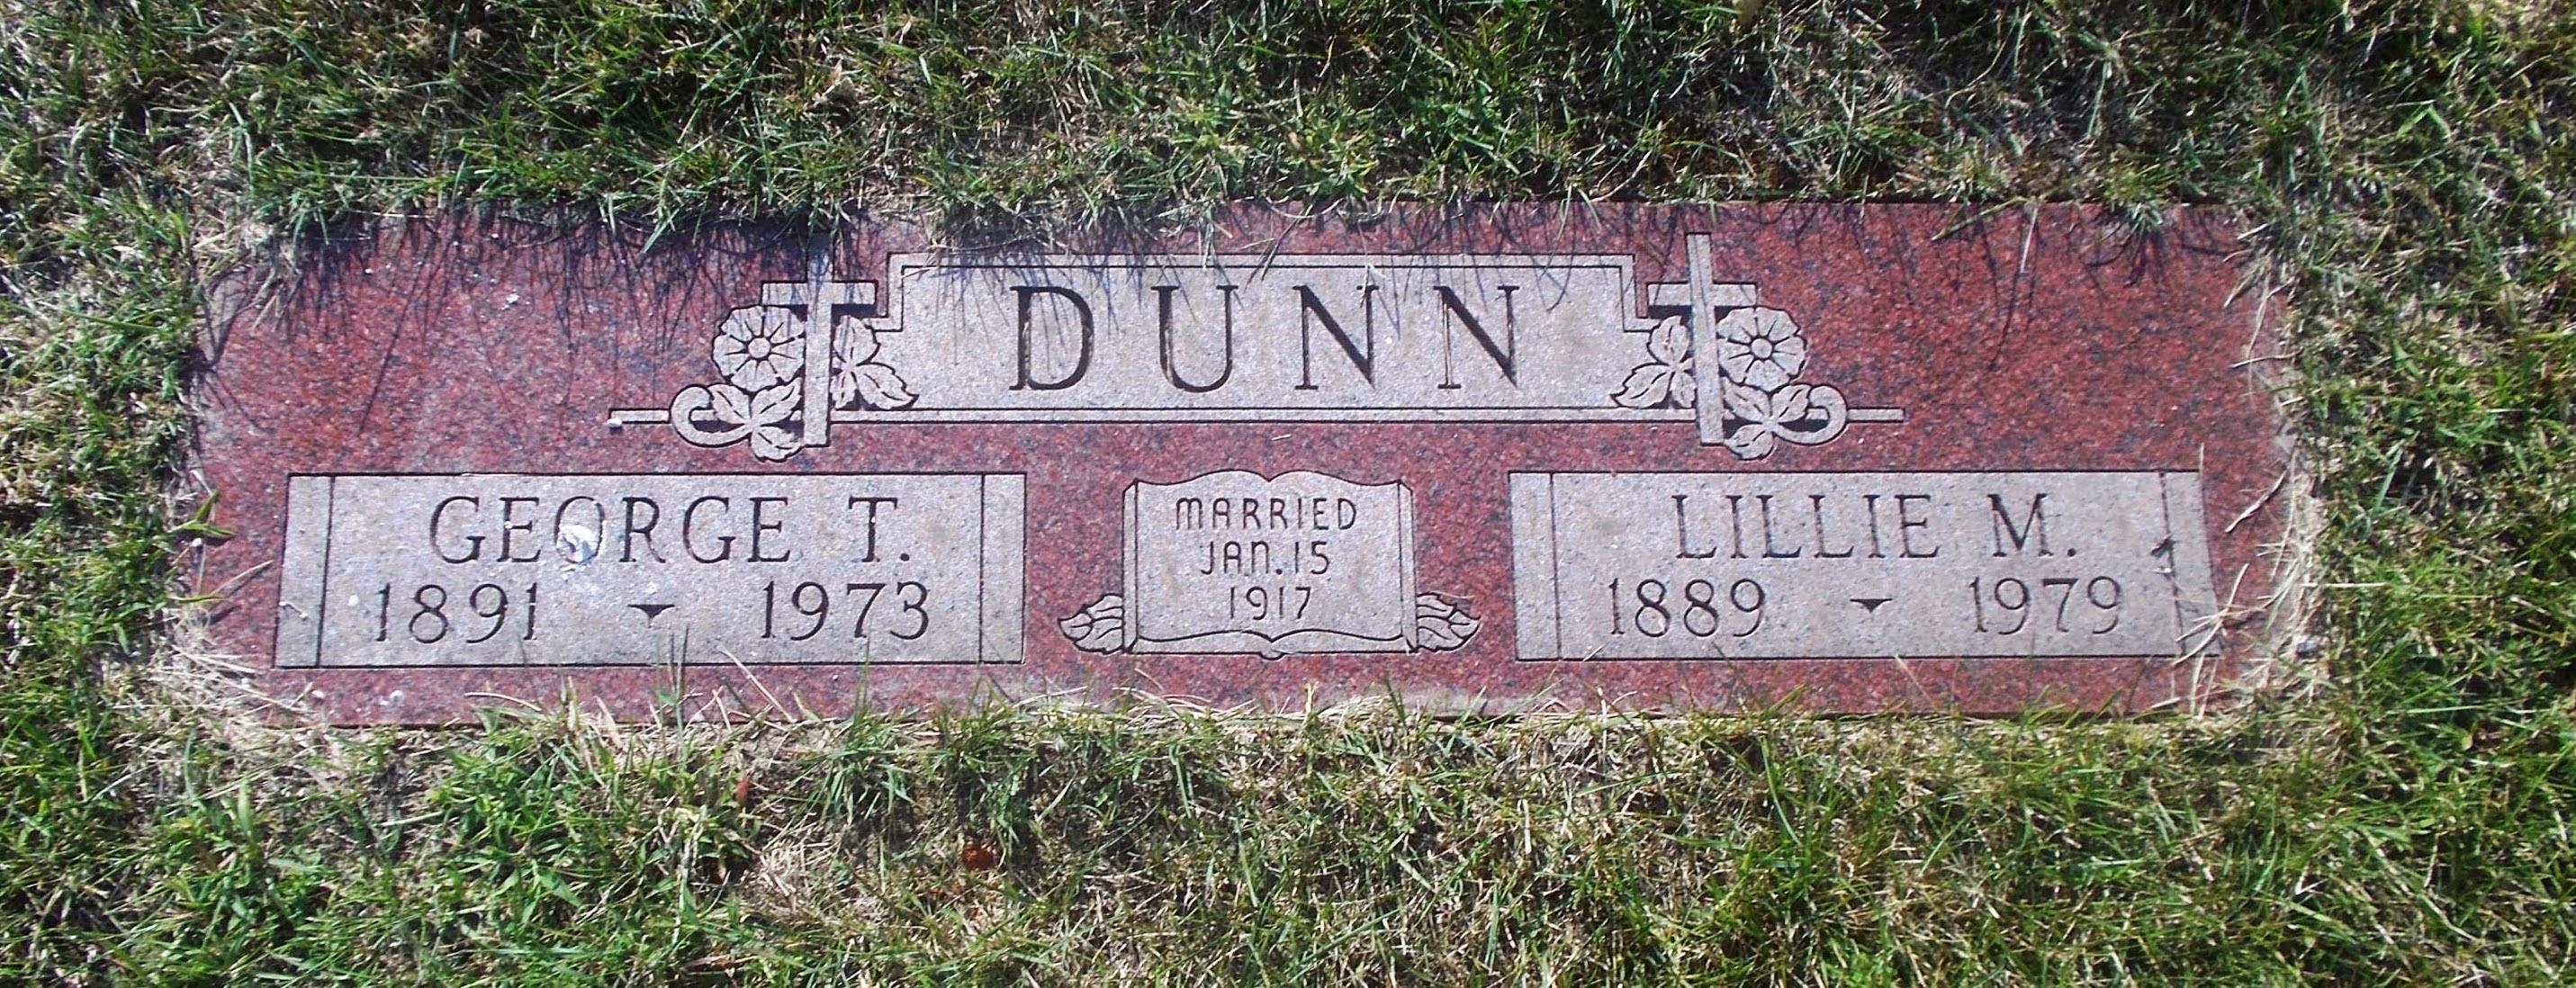 George T Dunn